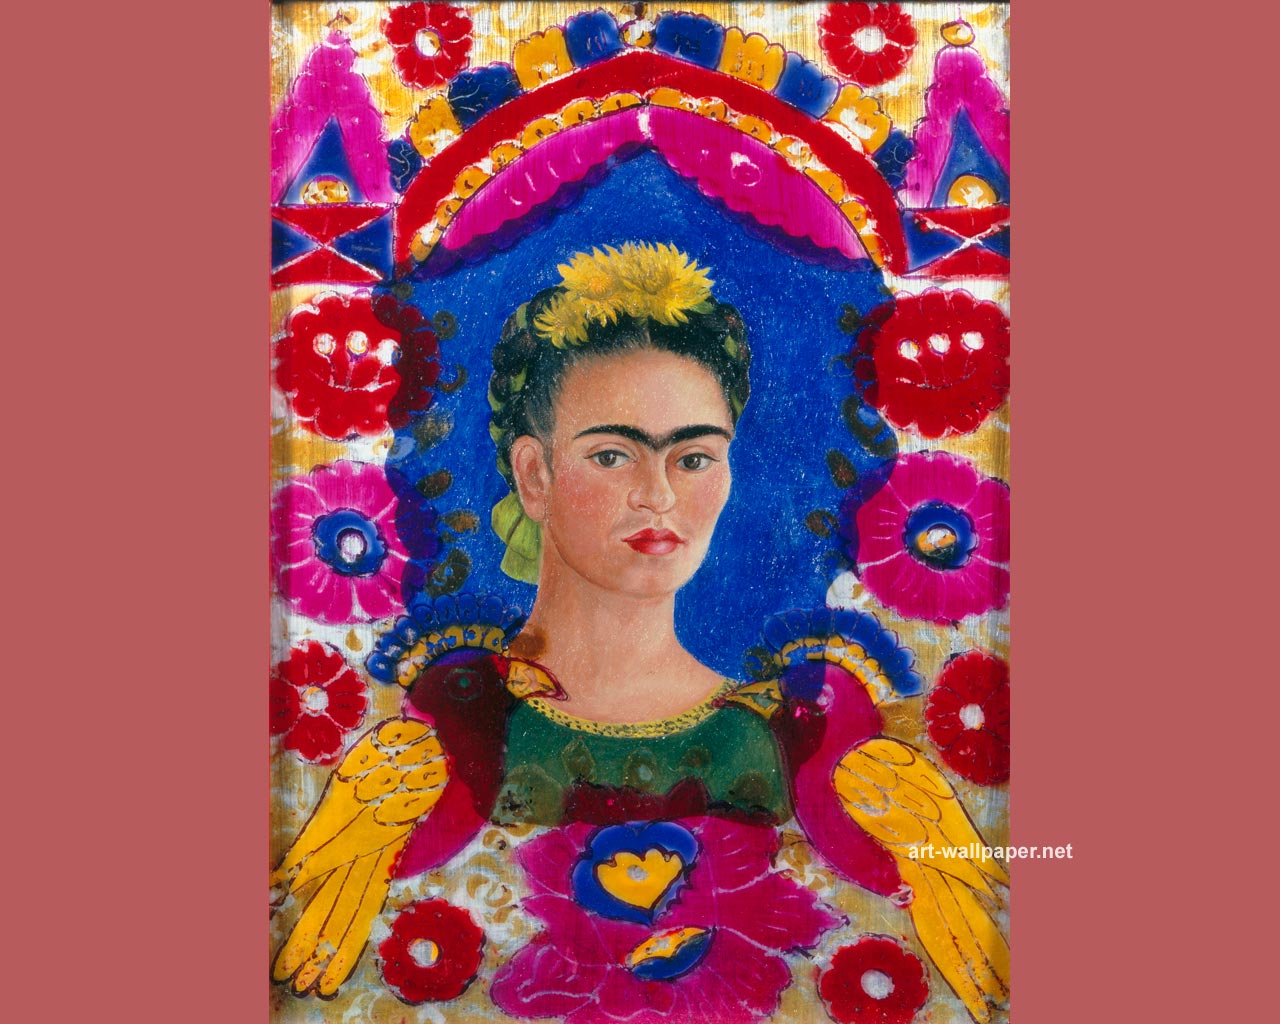 Frida Kahlo Self Portrait , HD Wallpaper & Backgrounds